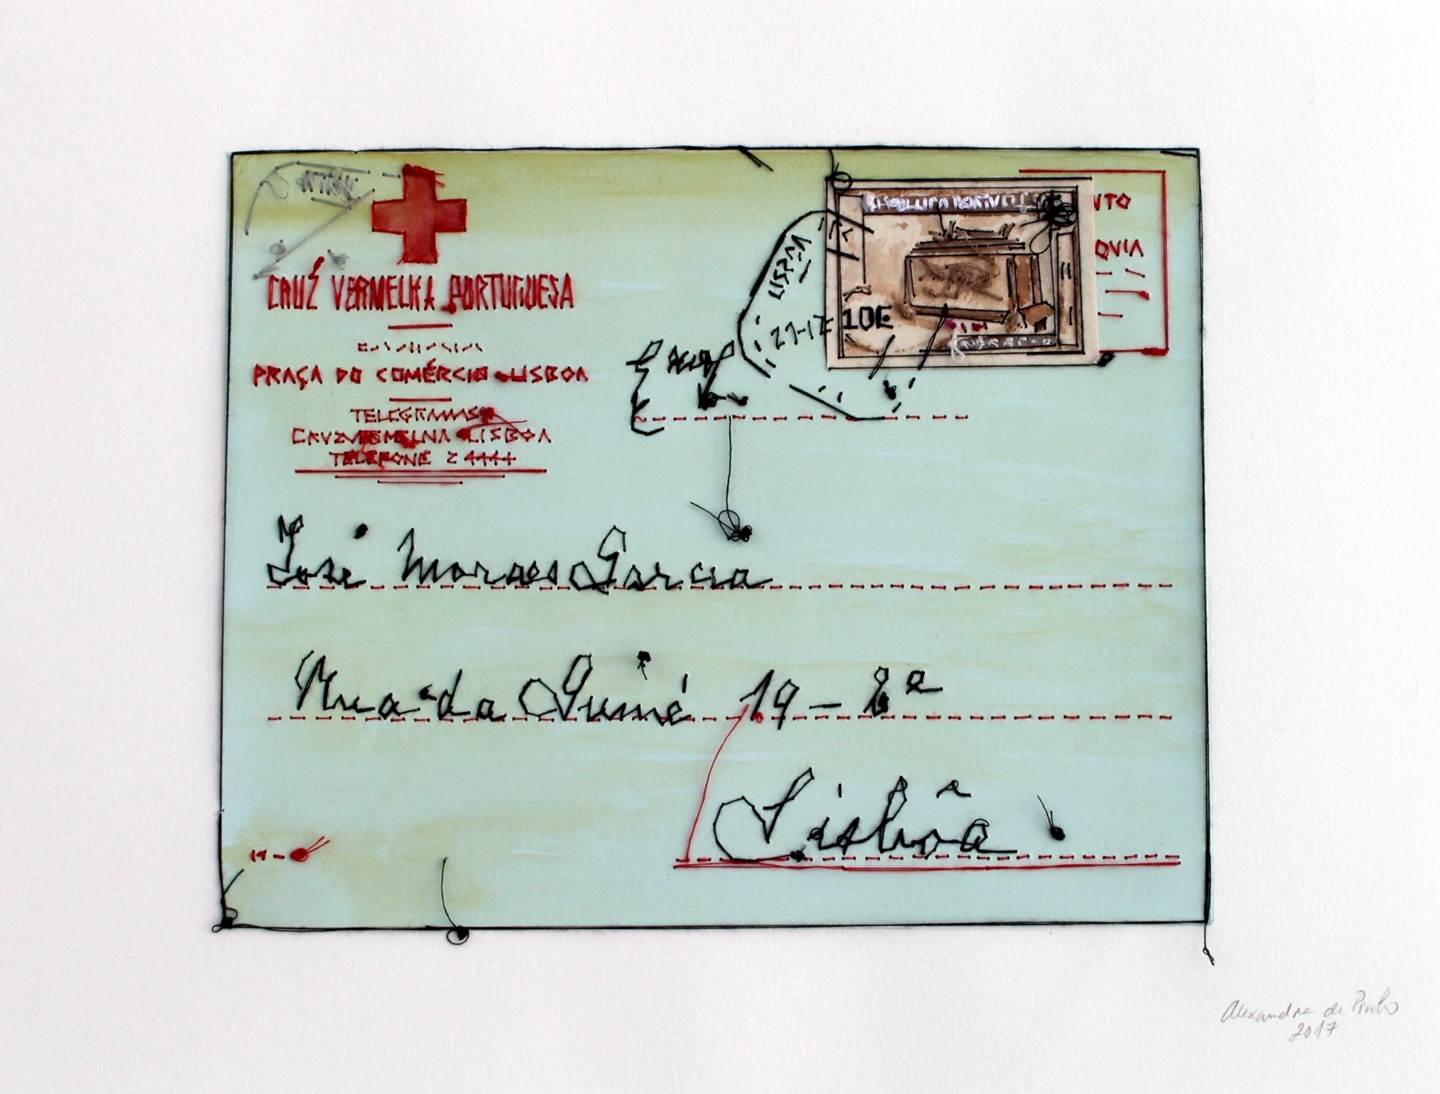 Telegrama da Cruz Vermelha, original   Drawing and Illustration by Alexandra de Pinho